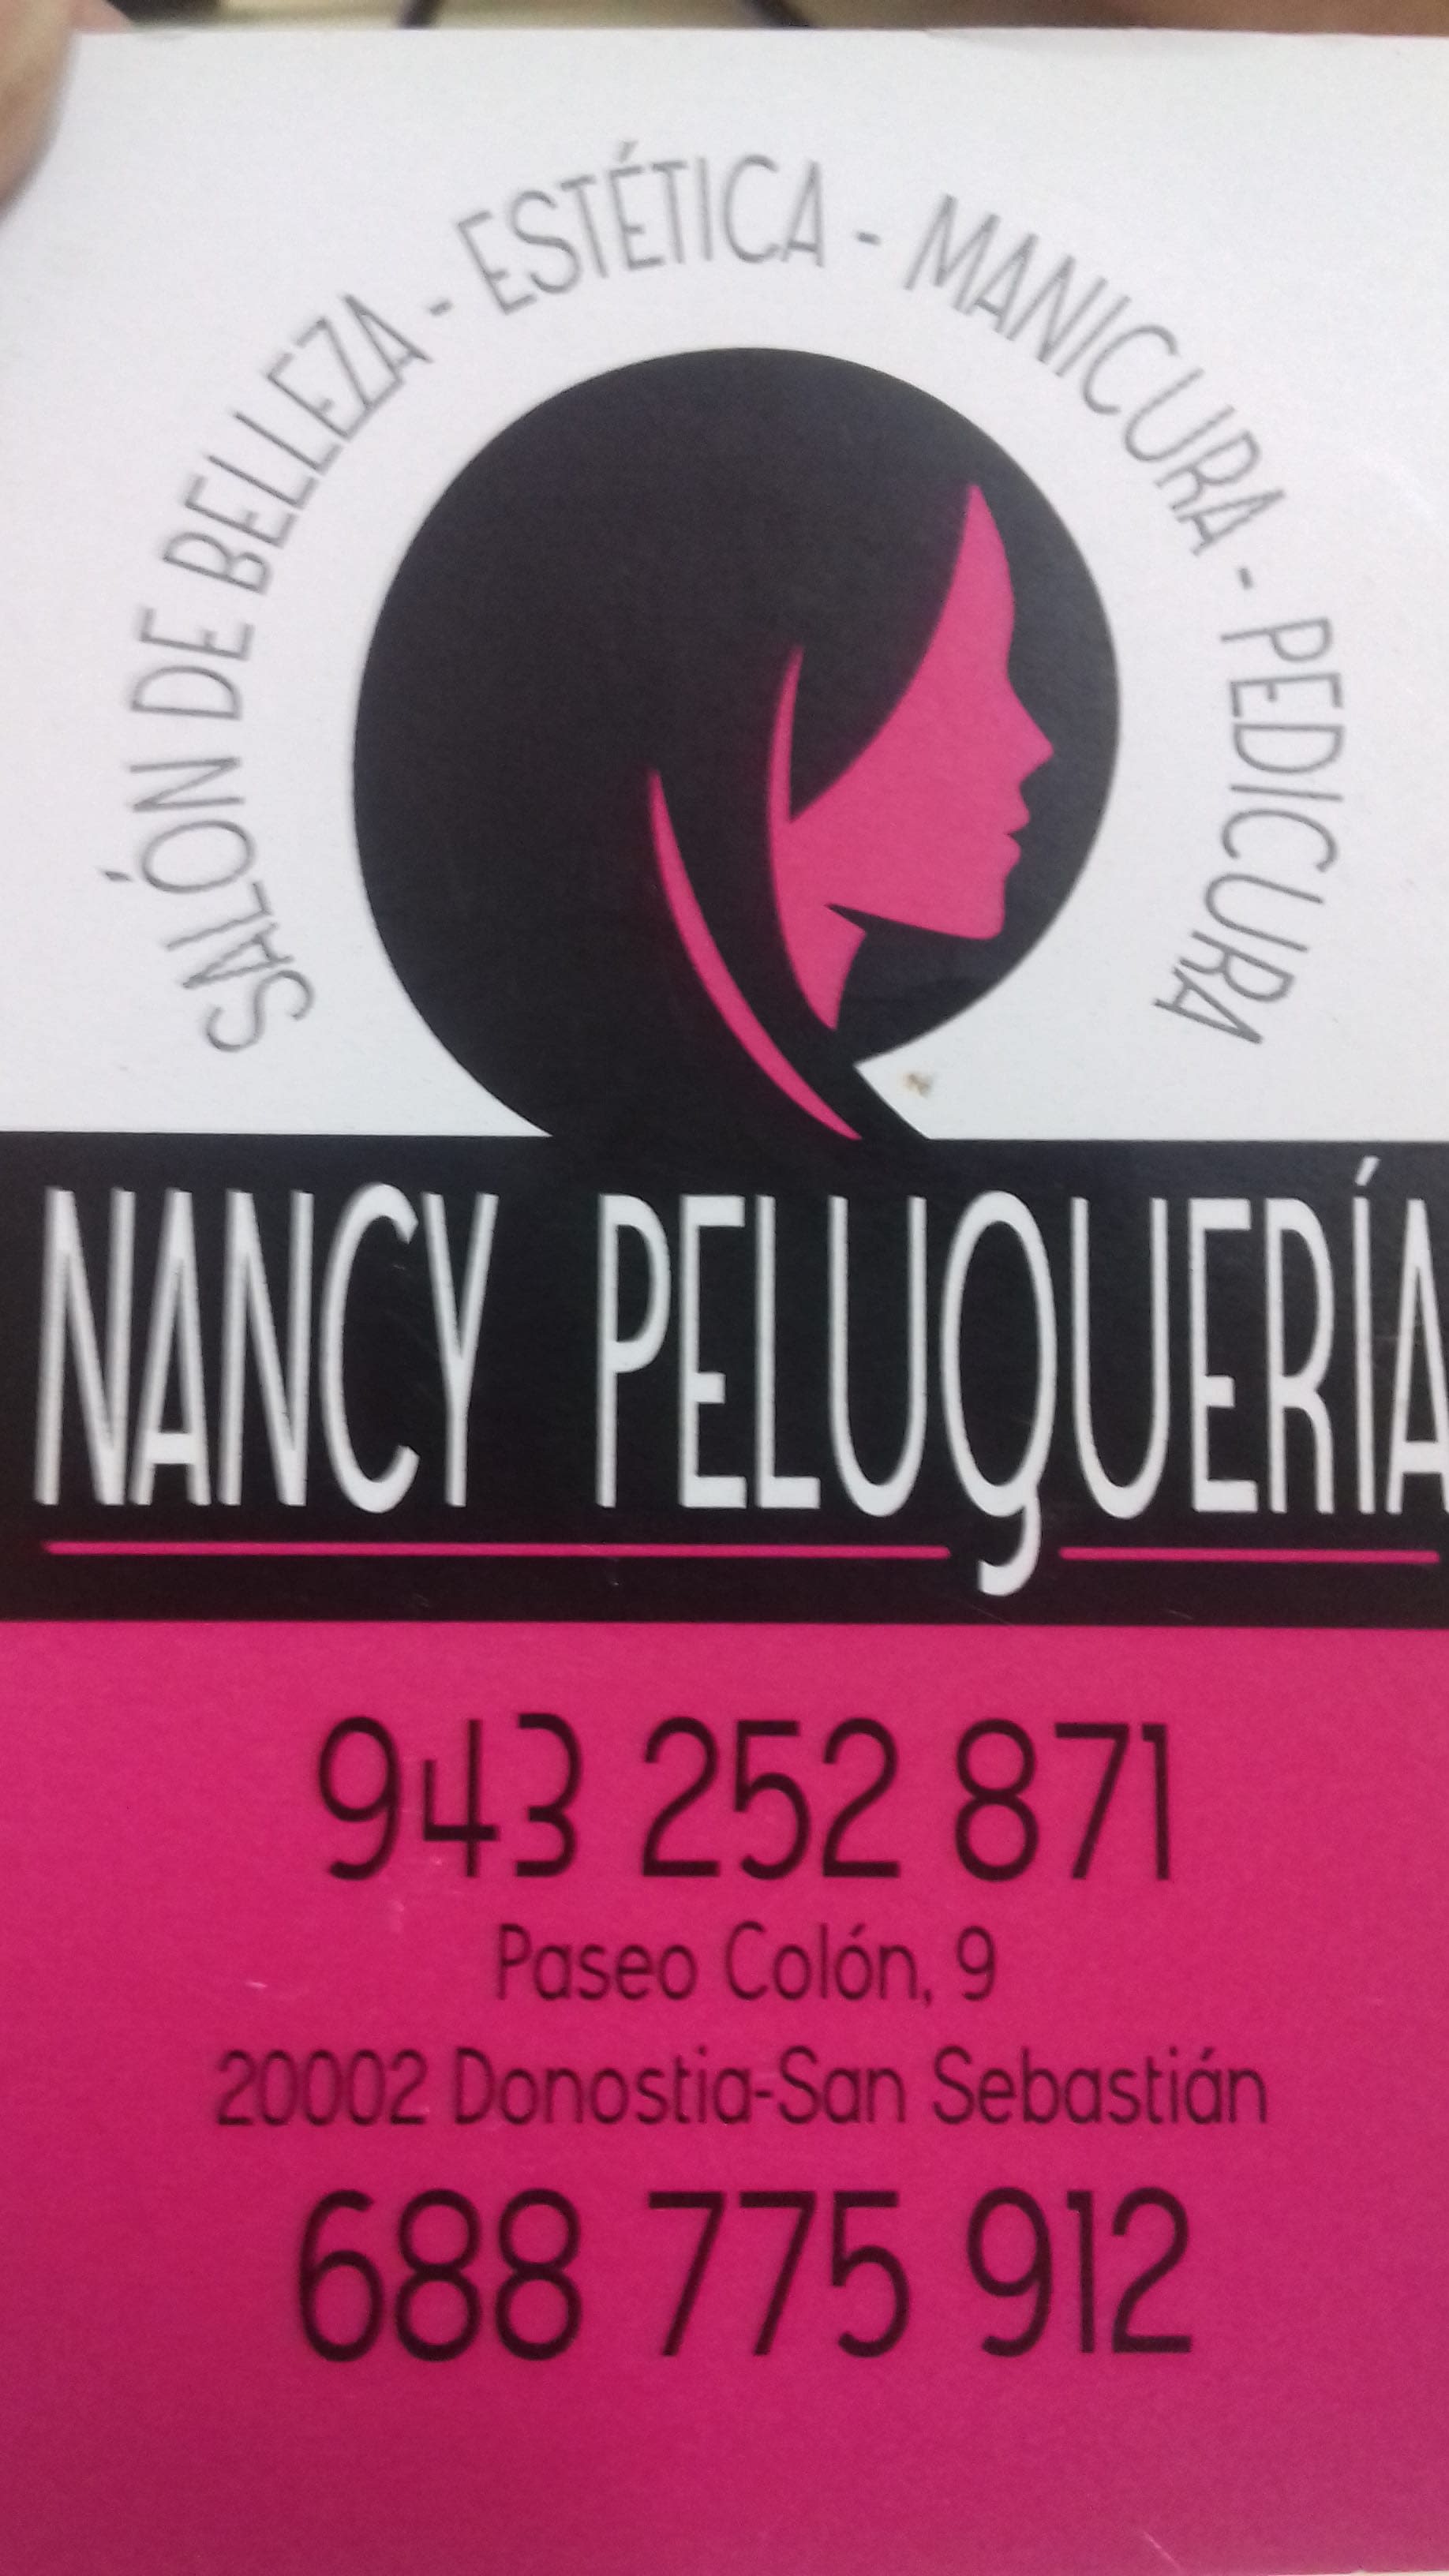 Nancy Peluquería